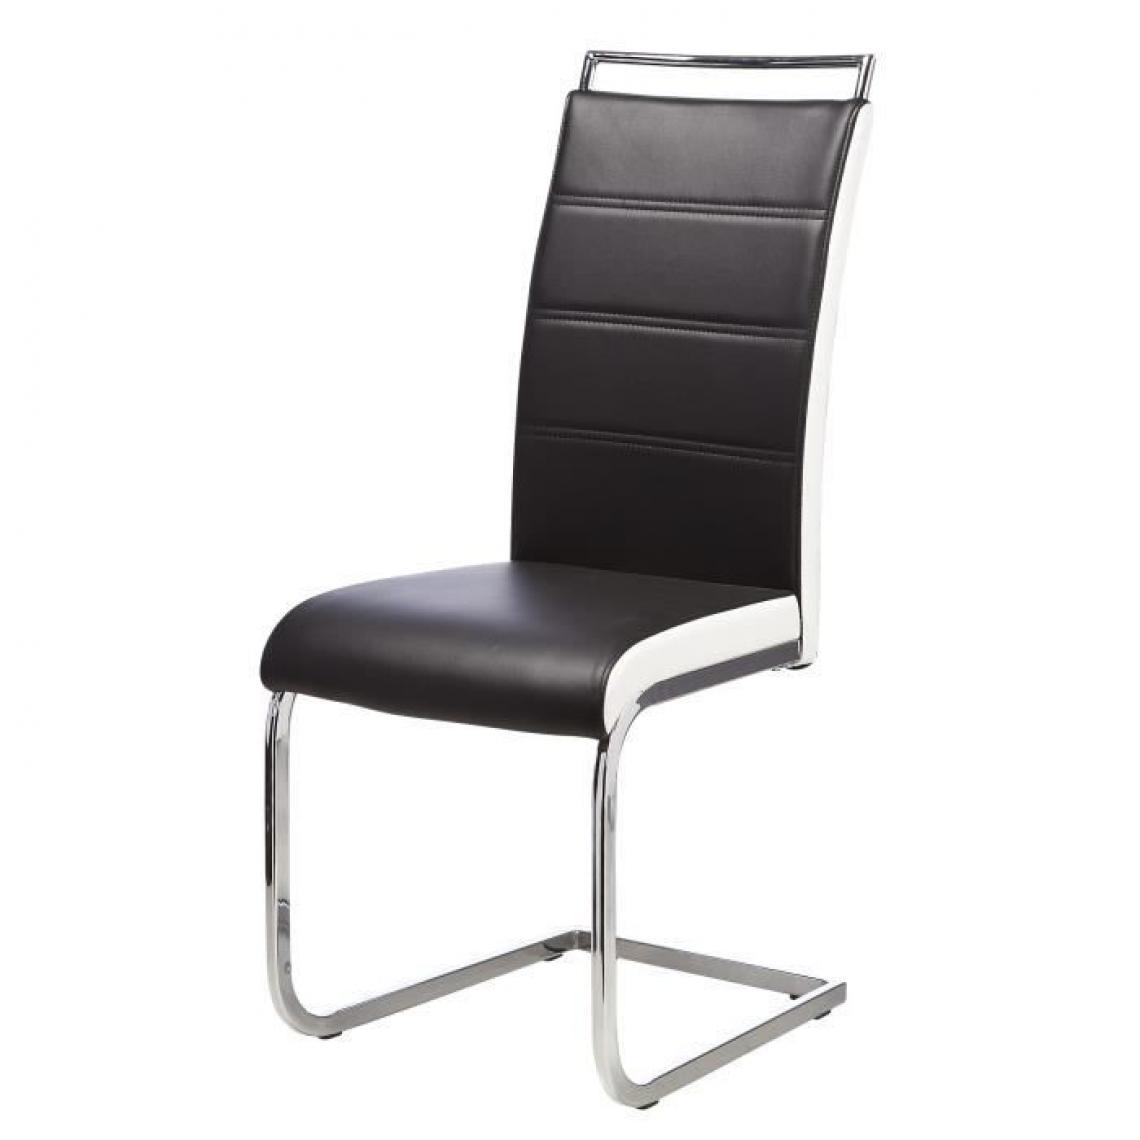 Icaverne - CHAISE DYLAN Lot de 4 chaises - Pieds métal chromé - Simili Noir et Blanc - L 42 x P 56 x H 102 cm - Chaises